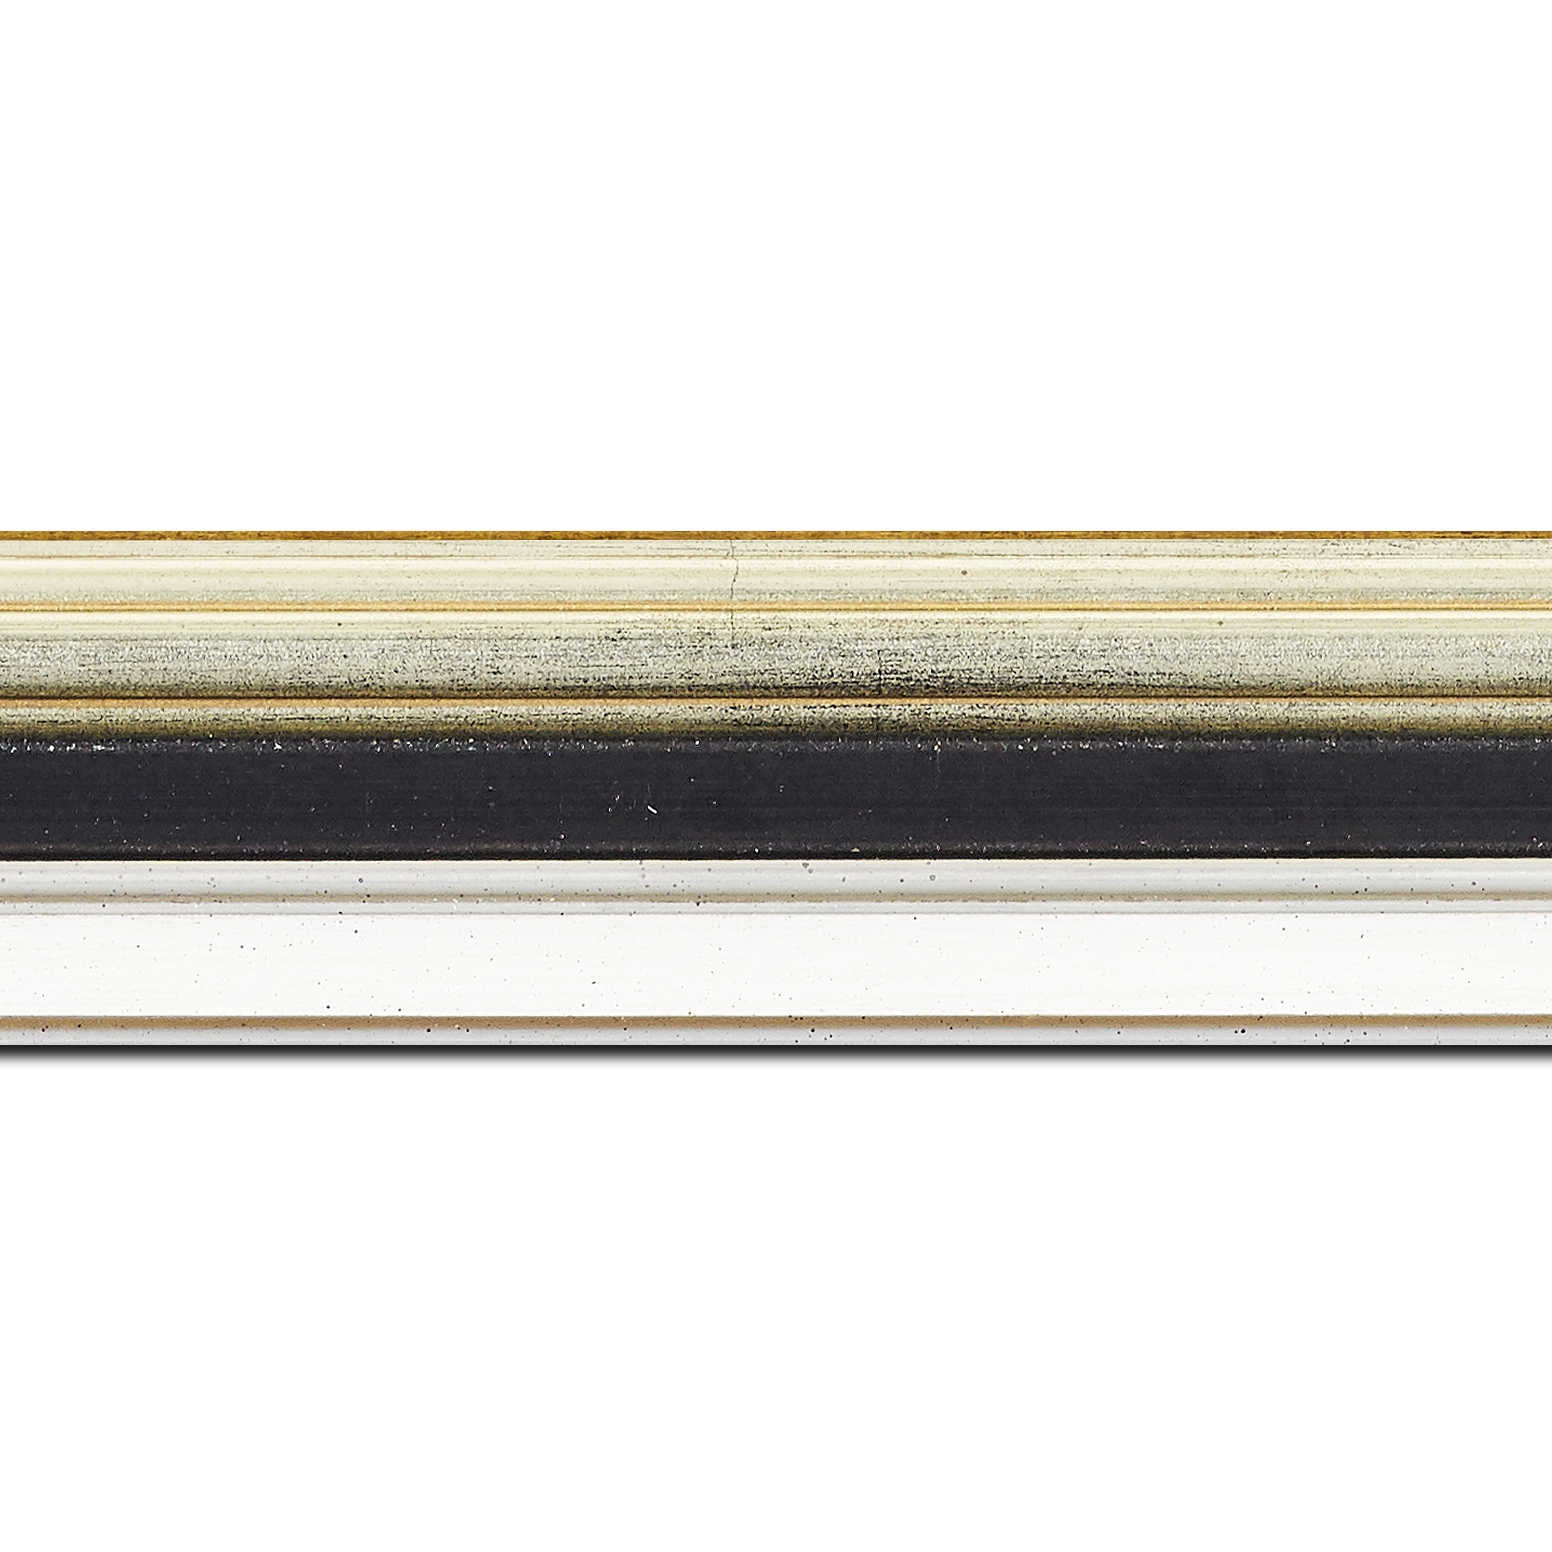 Baguette longueur 1.40m bois largeur 5.2cm argent gorge noire  marie louise blanche  filet argent intégrée